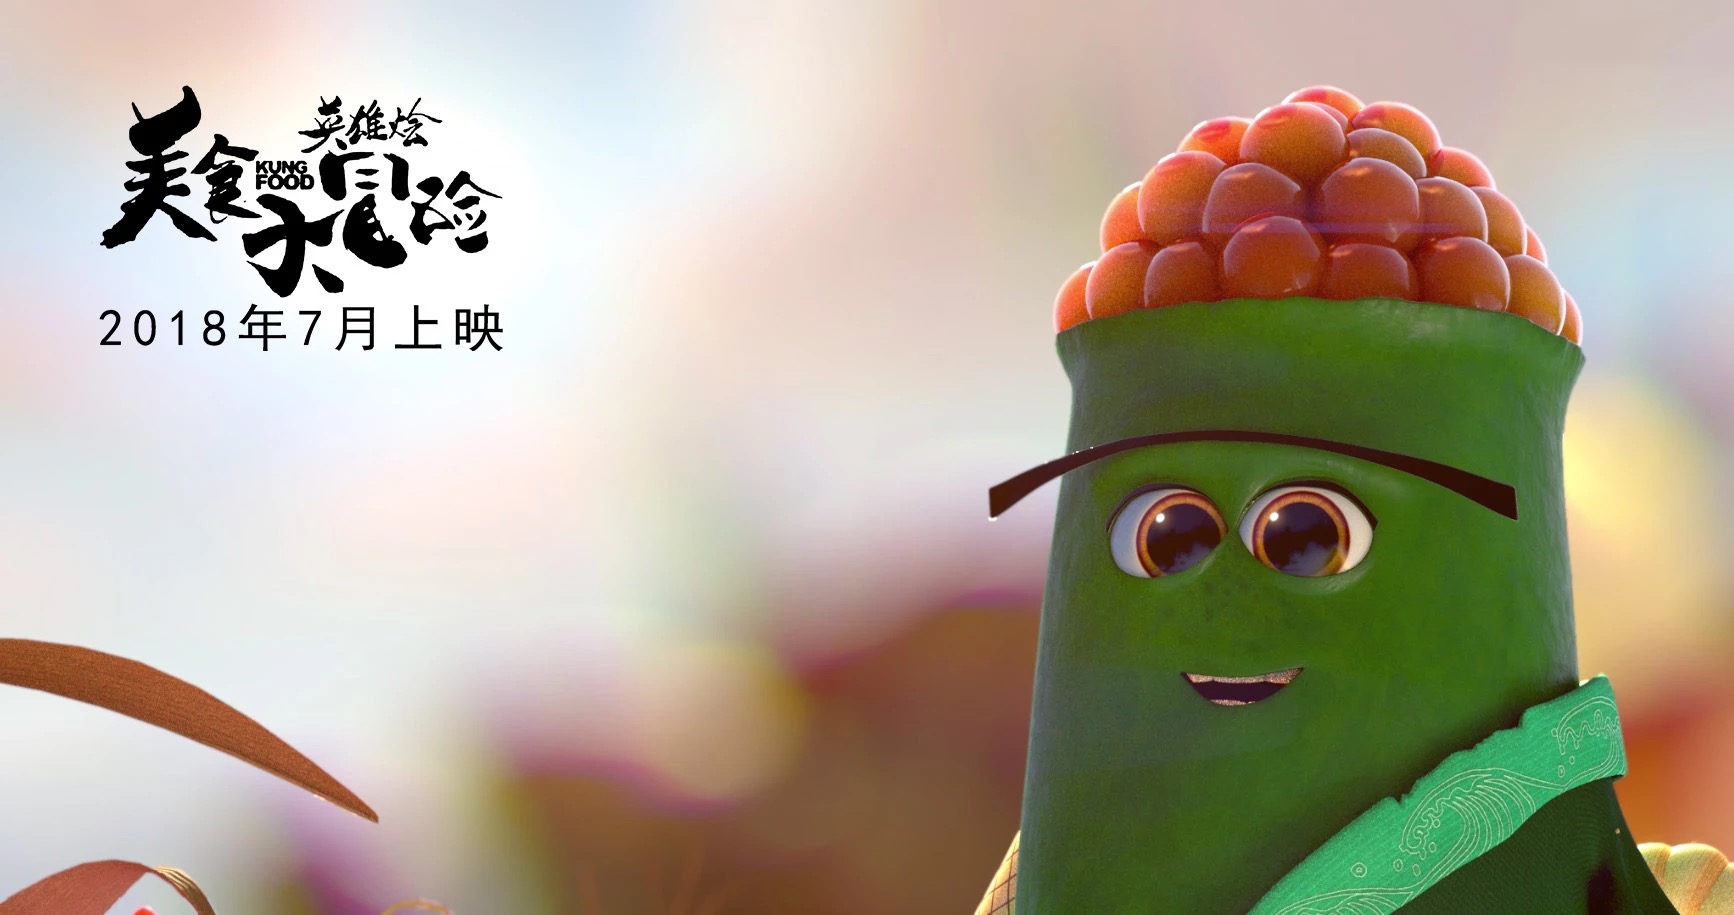 包子面条寿司集体卖萌,《美食大冒险之英雄烩》可爱可口